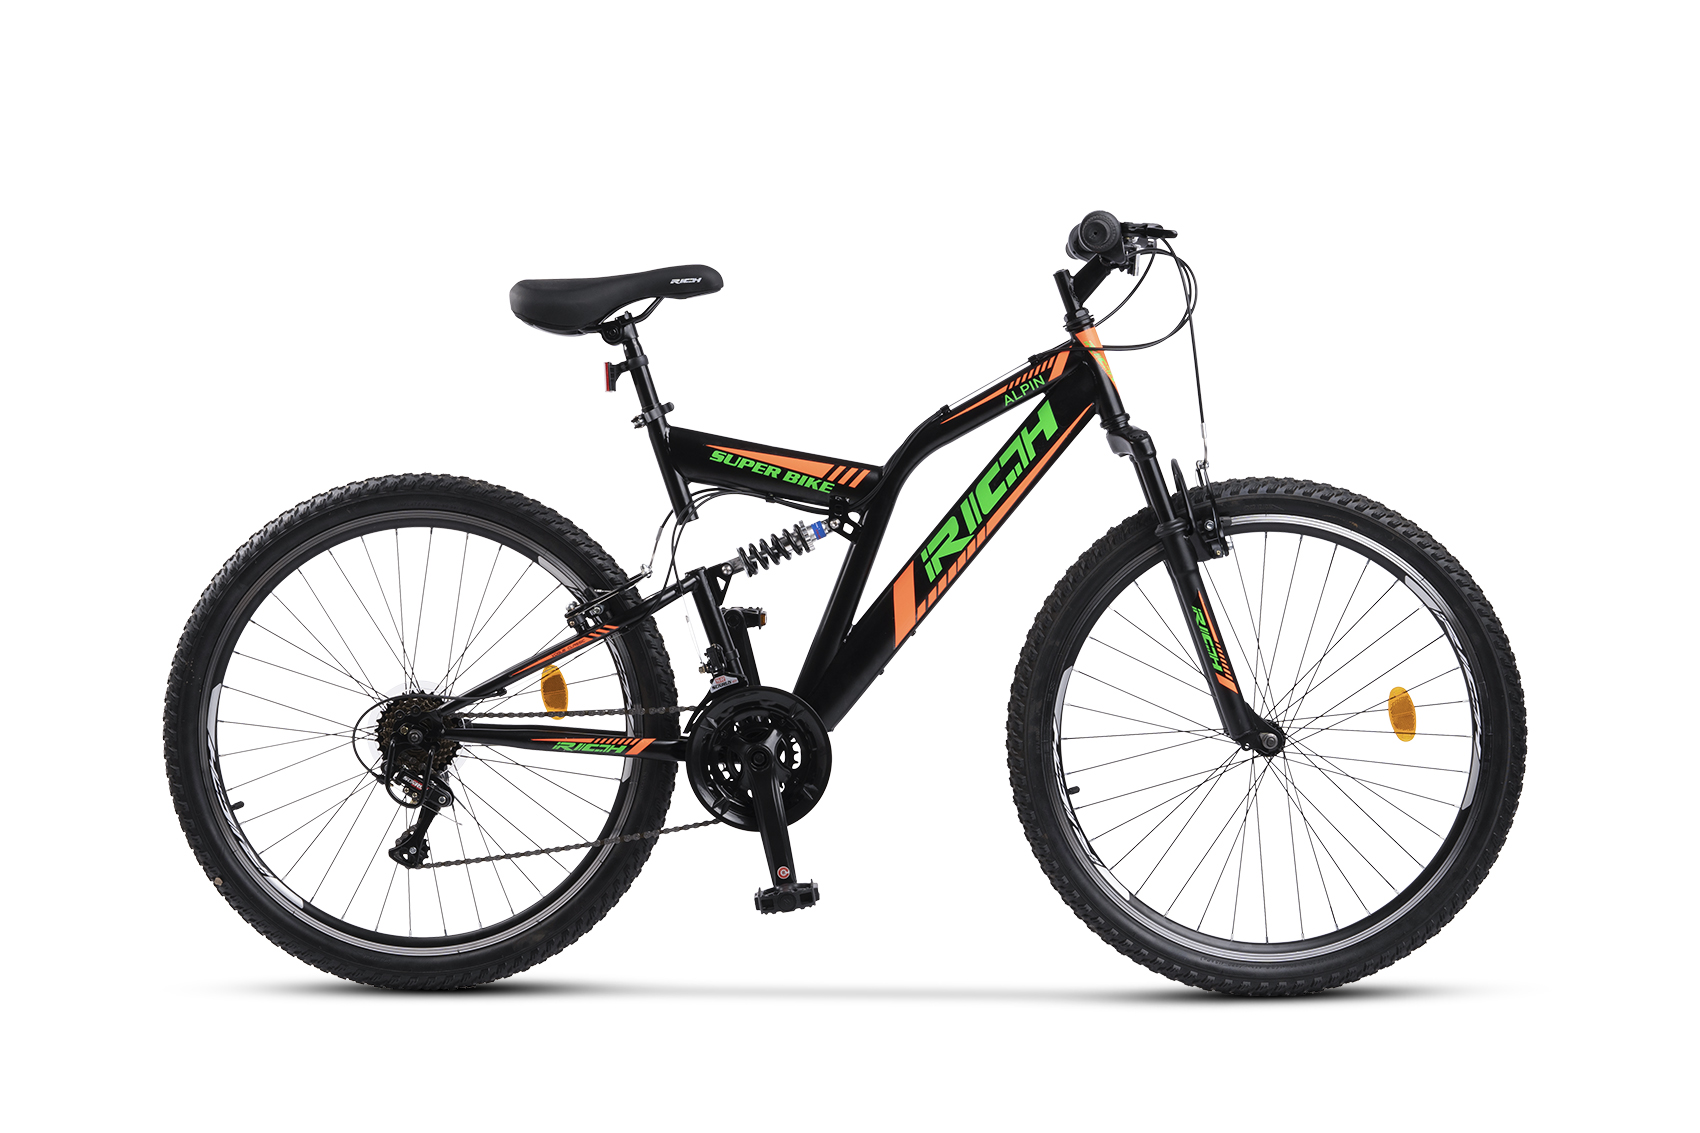 BICICLETE DE MUNTE - Bicicleta MTB-Full Suspension Rich R2649A, Sunrun 21 Viteze, Roti 26 Inch, Frane V-Brake, Negru/Verde/Portocaliu, carpatsport.ro